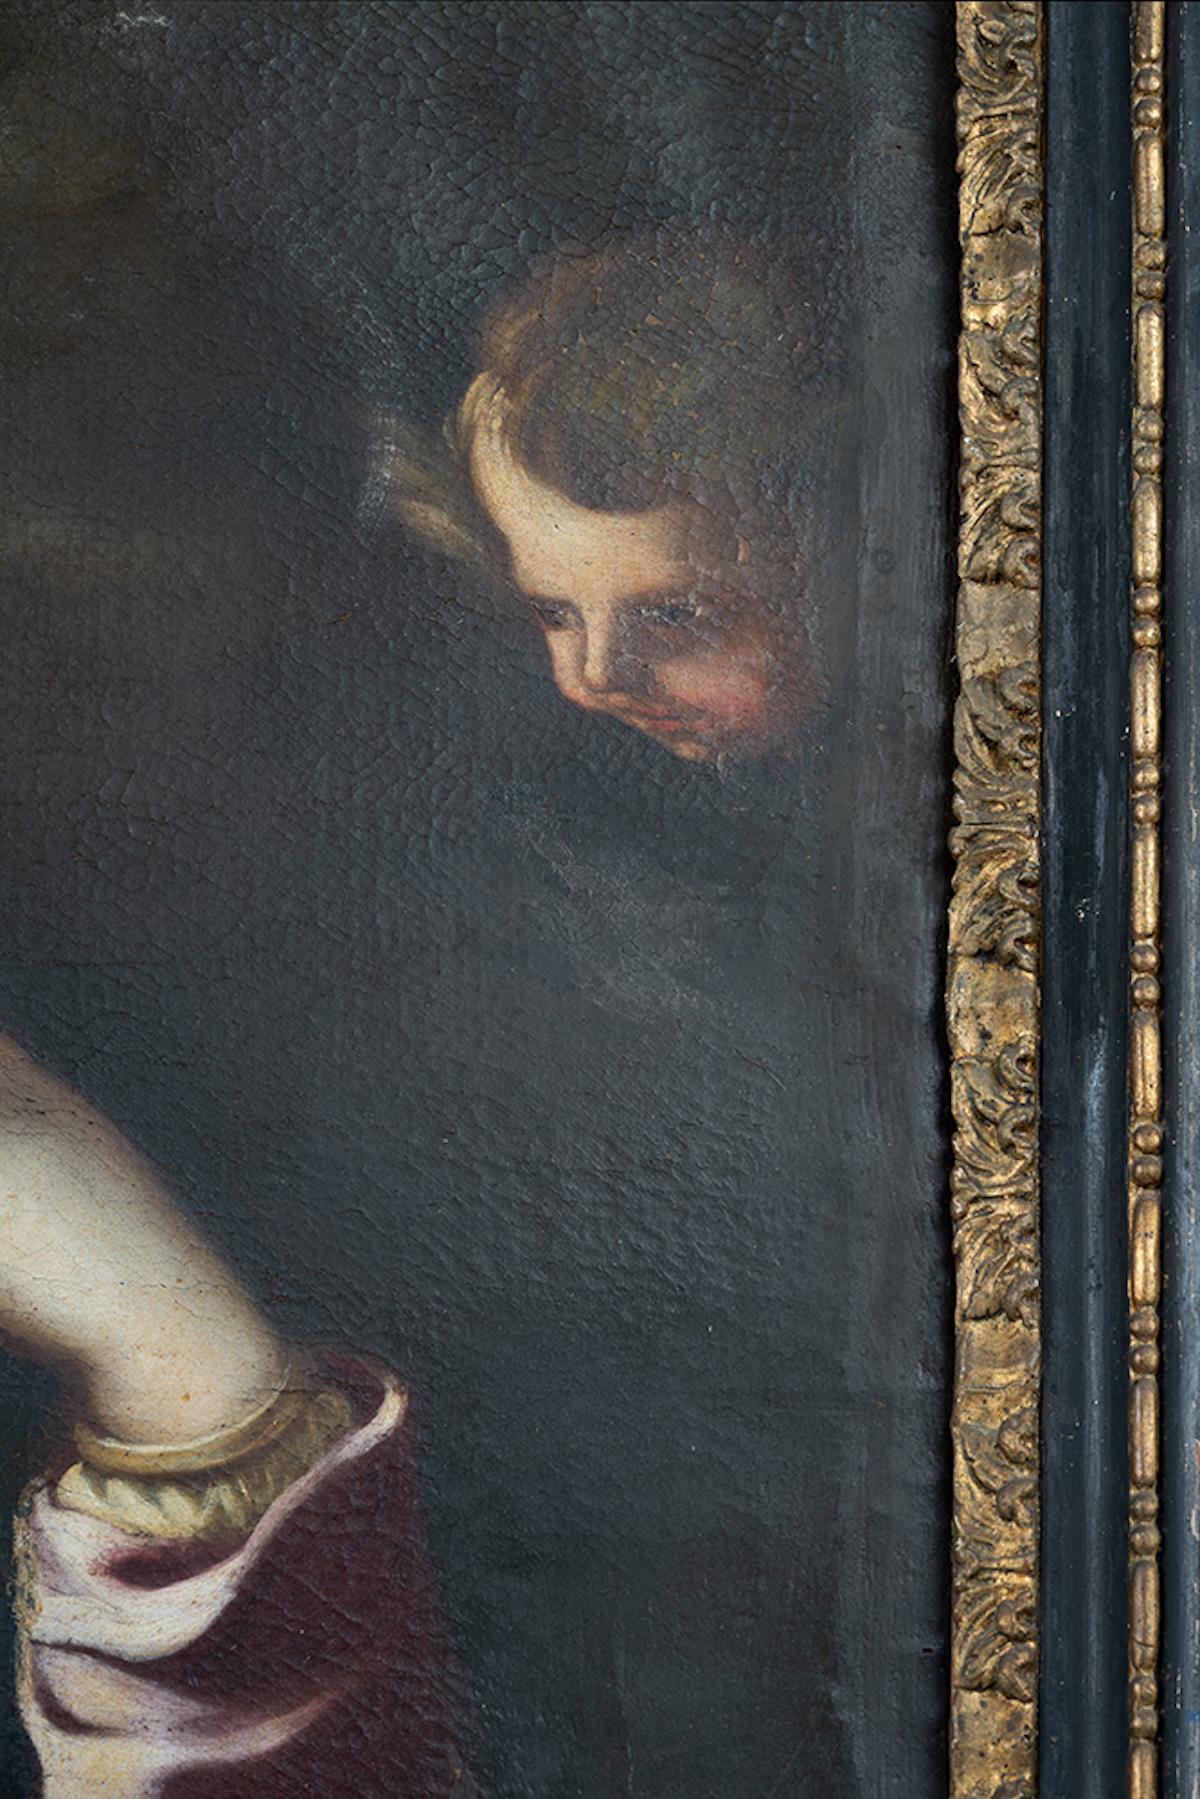 In questa “Madonna col Bambino”, Francesco Solimena esprime diversi elementi della sua poetica con una delicatezza pienamente rococò.

Il pittore campano, variando i toni del chiaroscuro dalla mantella ondulata al bambino, passa dalla diffusa